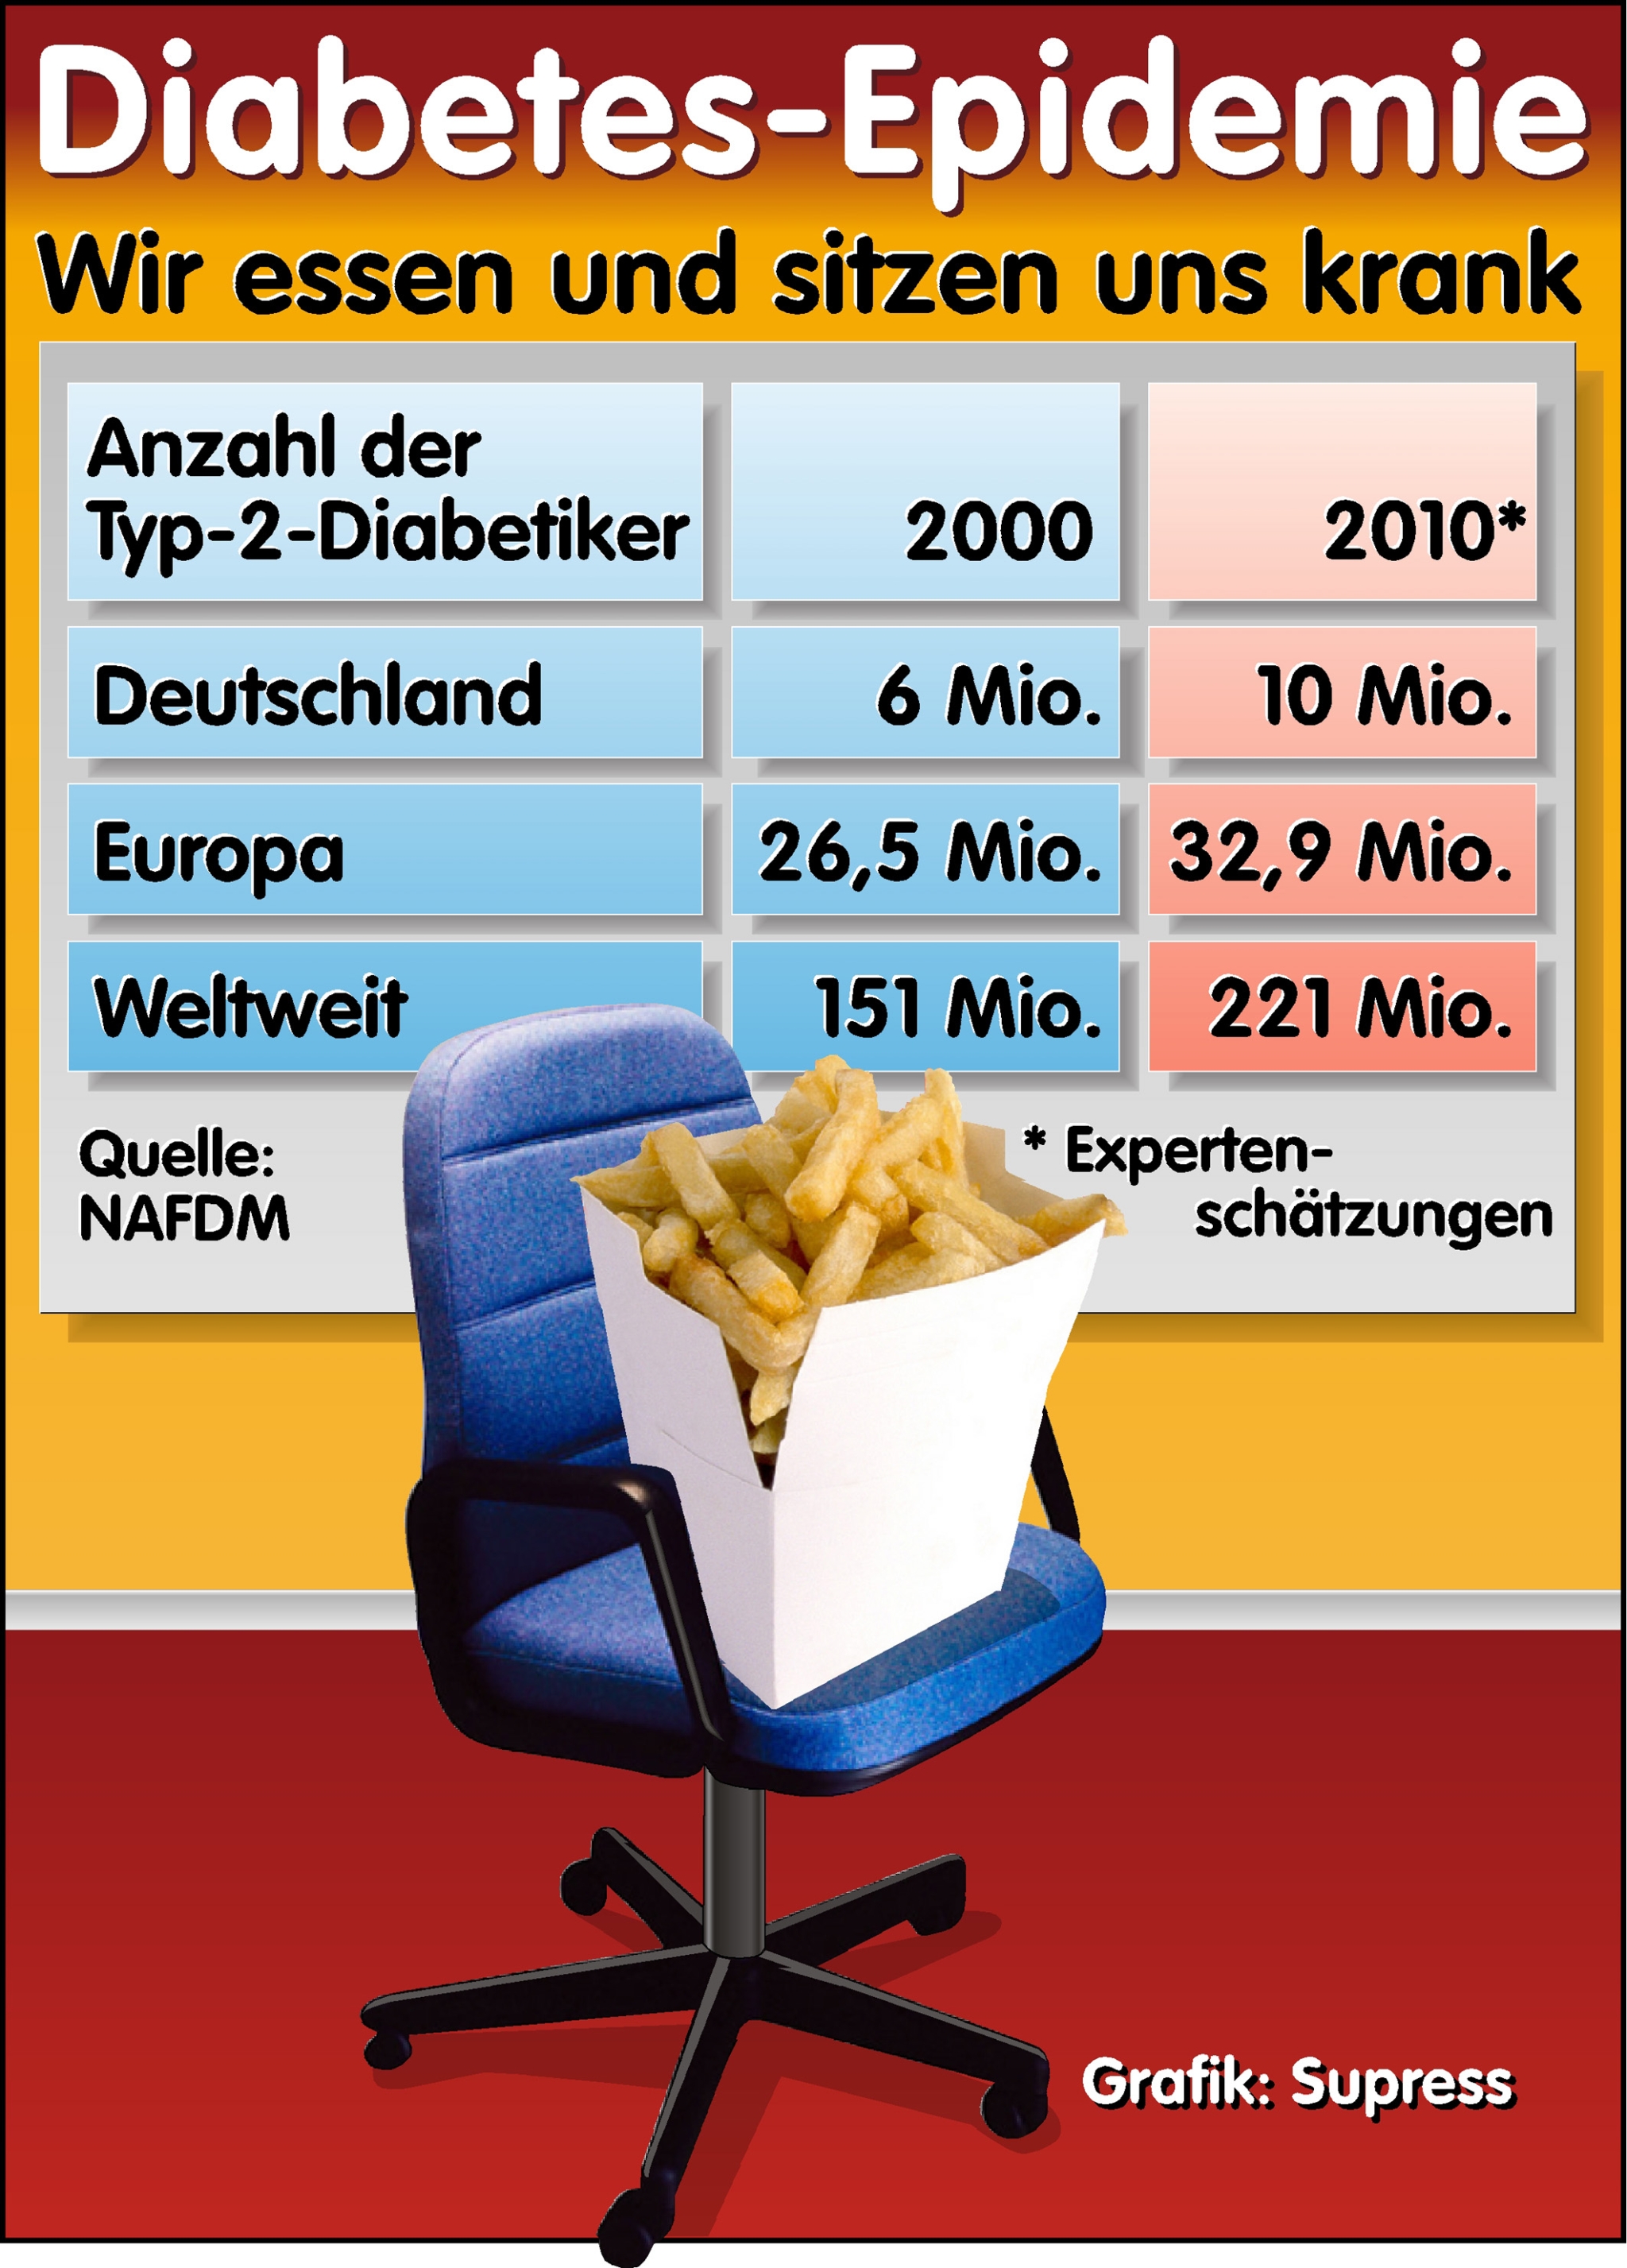 Die Grafik zeigt die Diabetes-Zahlen deutschland-, eu- und weltweit. Der Ausblick verheißt weitere beträchtliche Steigerungsraten. Kernaussage, bezogen auf Typ 2 Diabetes: wir bewegen uns zu wenig und essen das Falsche (zu fett, kohlenhydratreich, wenig B